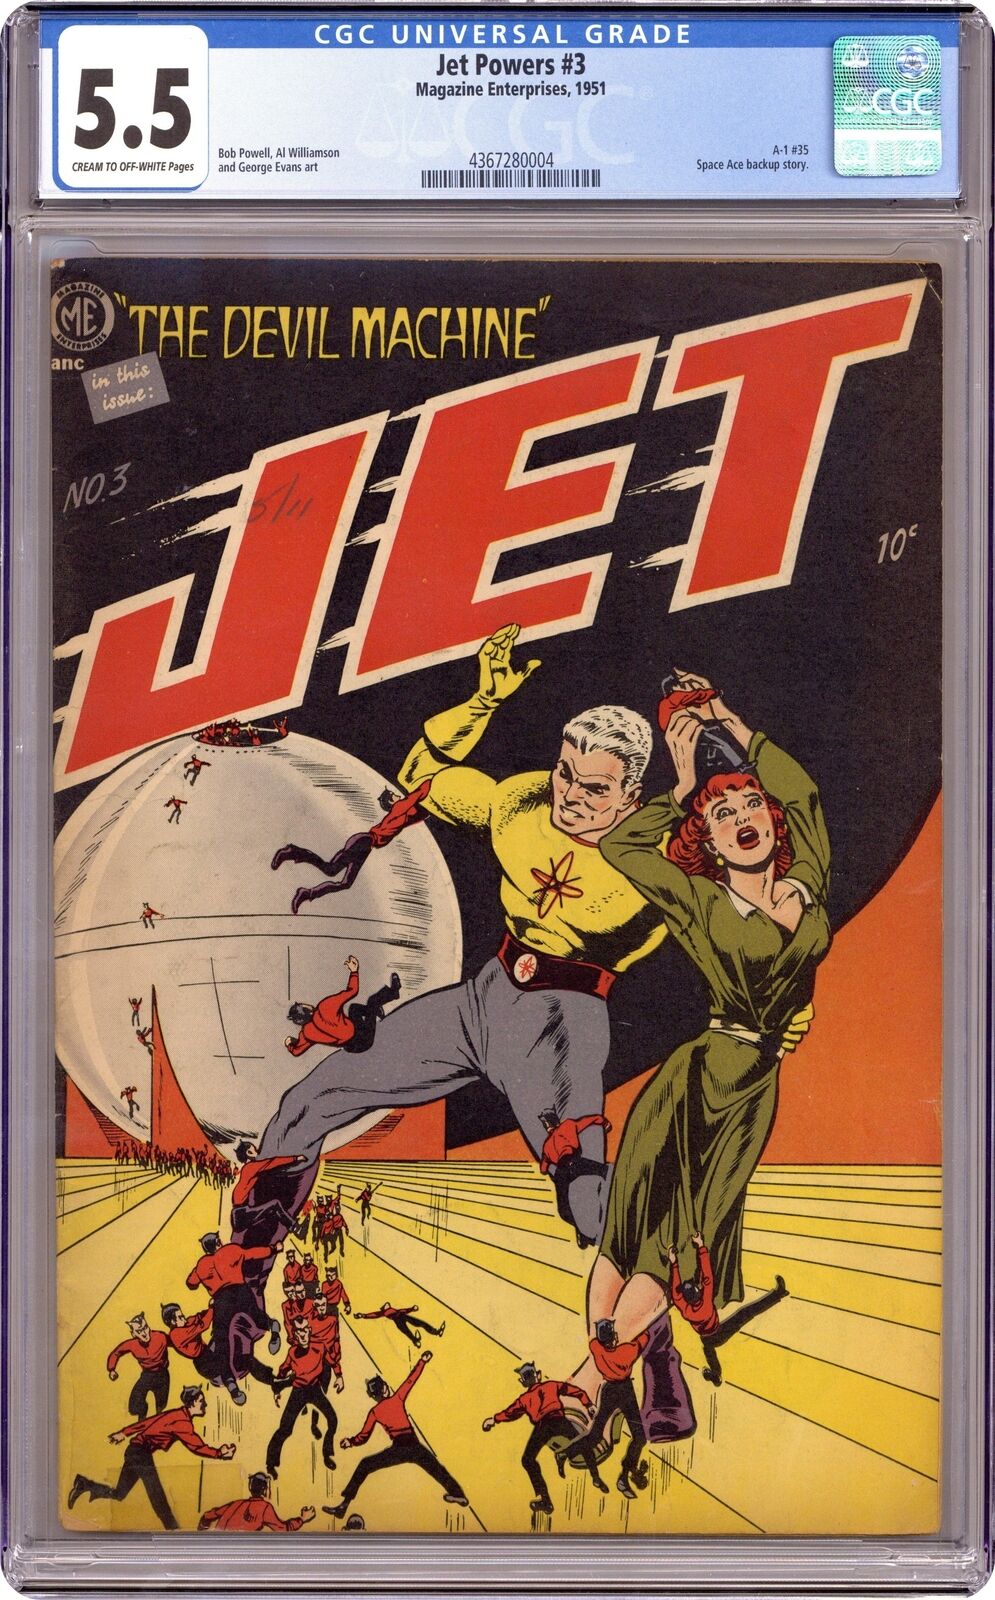 Jet Powers #3 CGC 5.5 1951 4367280004